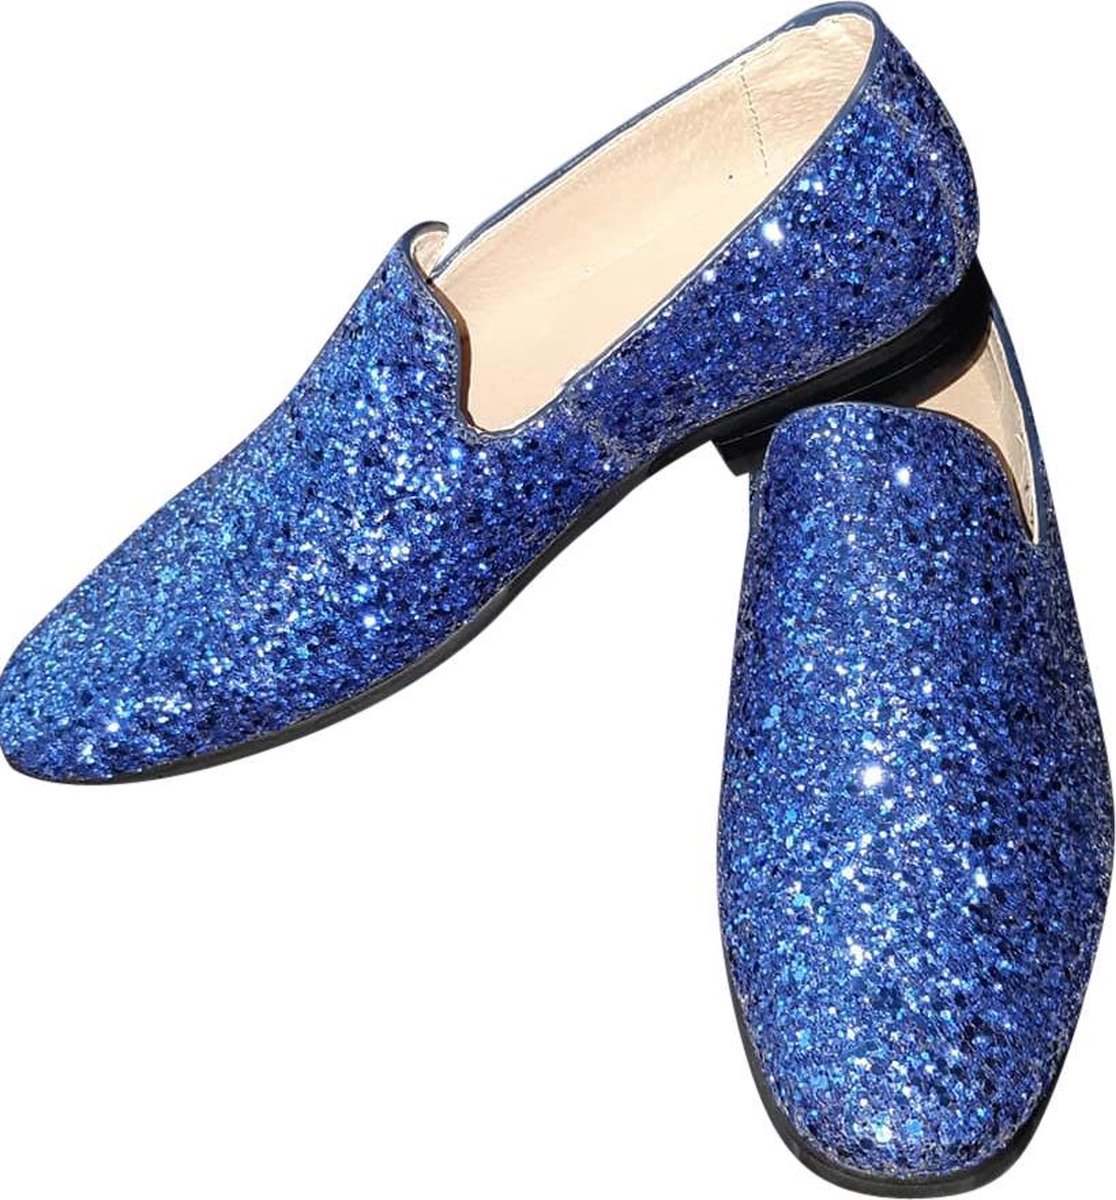 Heren - Glitter schoen - Kobalt blauw - Maat 43 - Disco